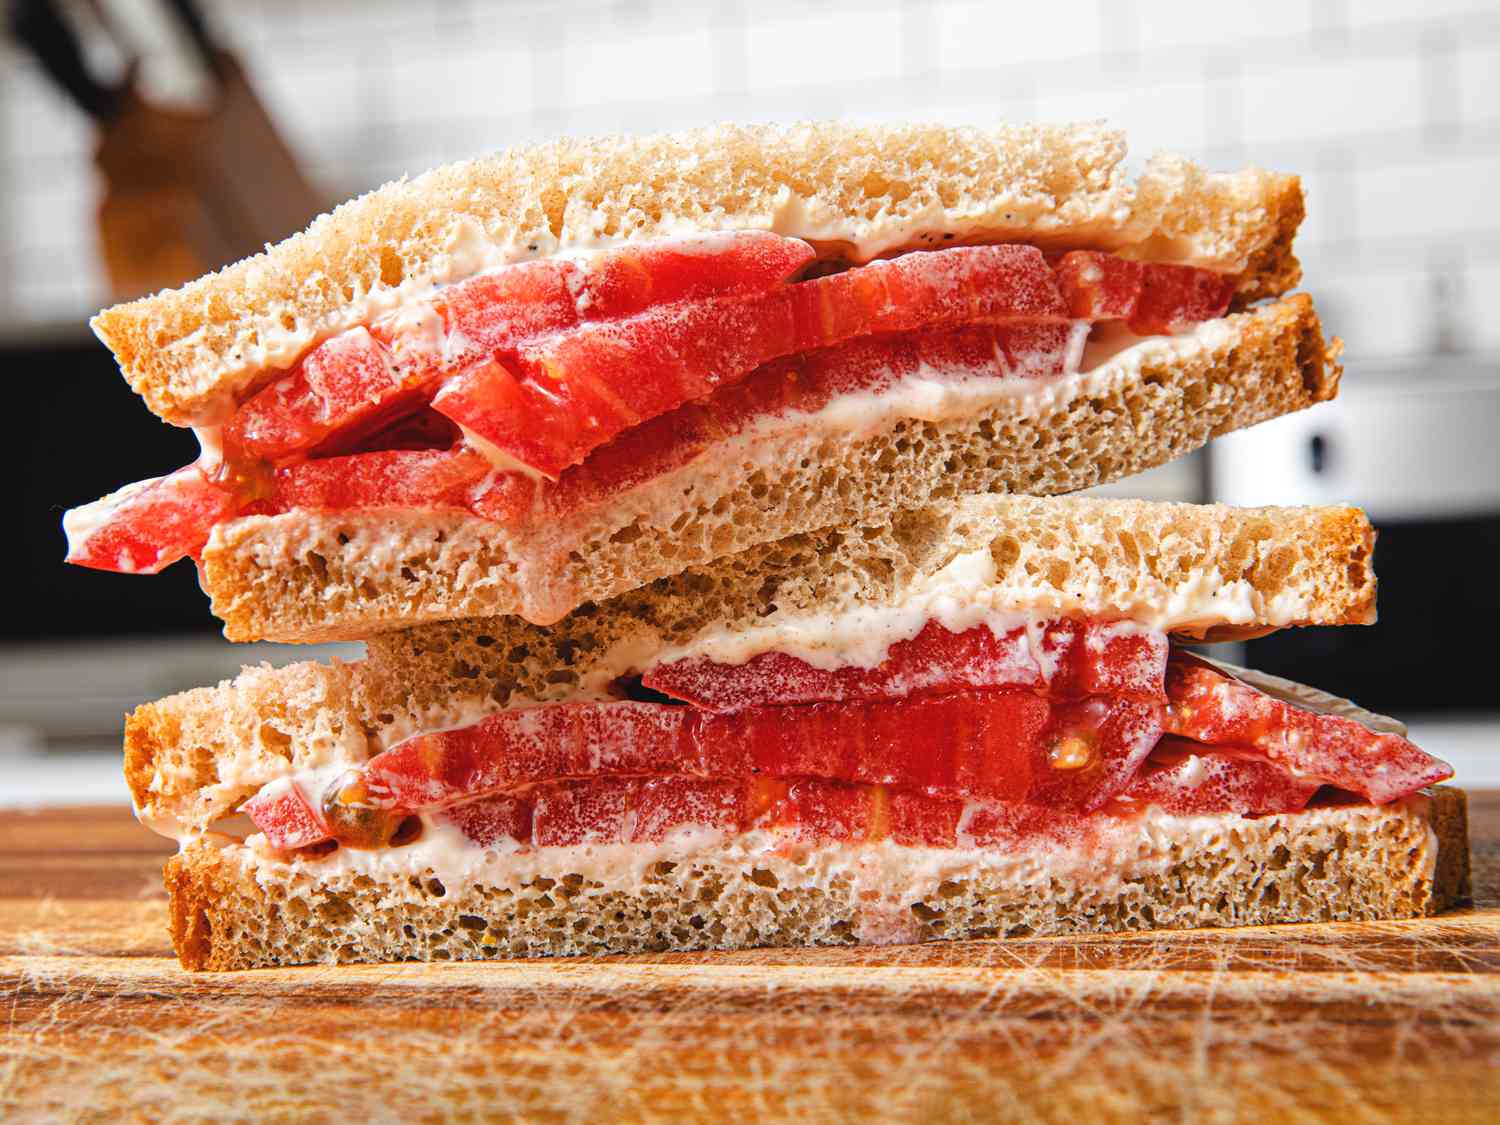 经典的番茄三明治切成段,斜剪和堆放